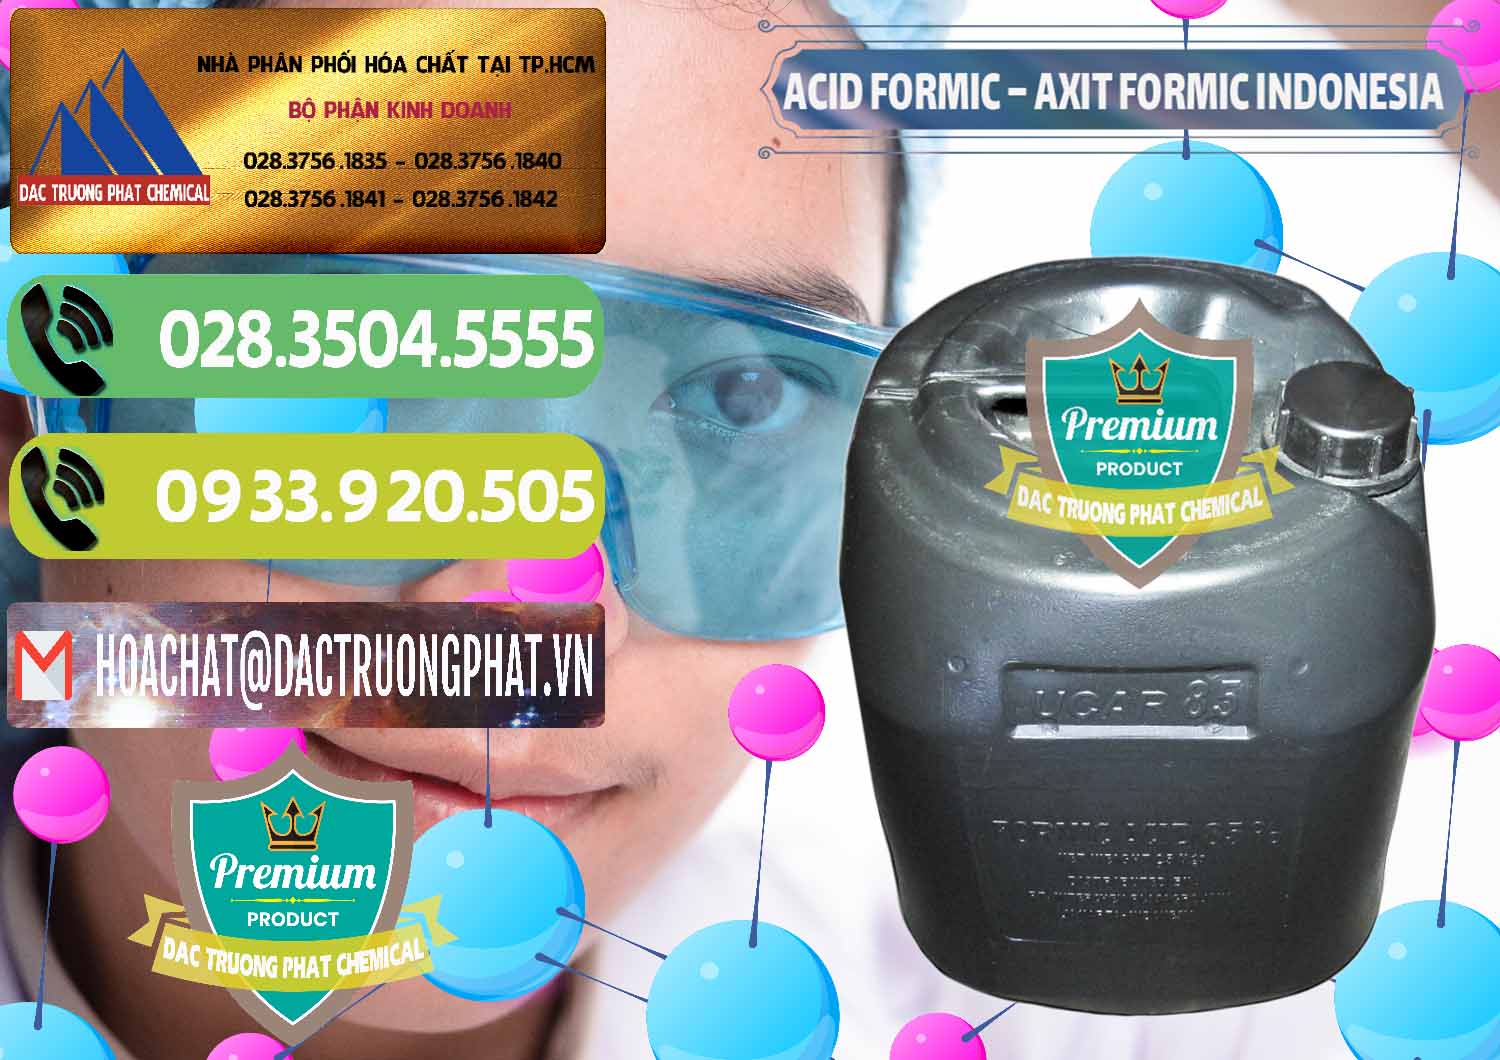 Nơi chuyên cung ứng - bán Acid Formic - Axit Formic Indonesia - 0026 - Kinh doanh và phân phối hóa chất tại TP.HCM - hoachatmientay.vn